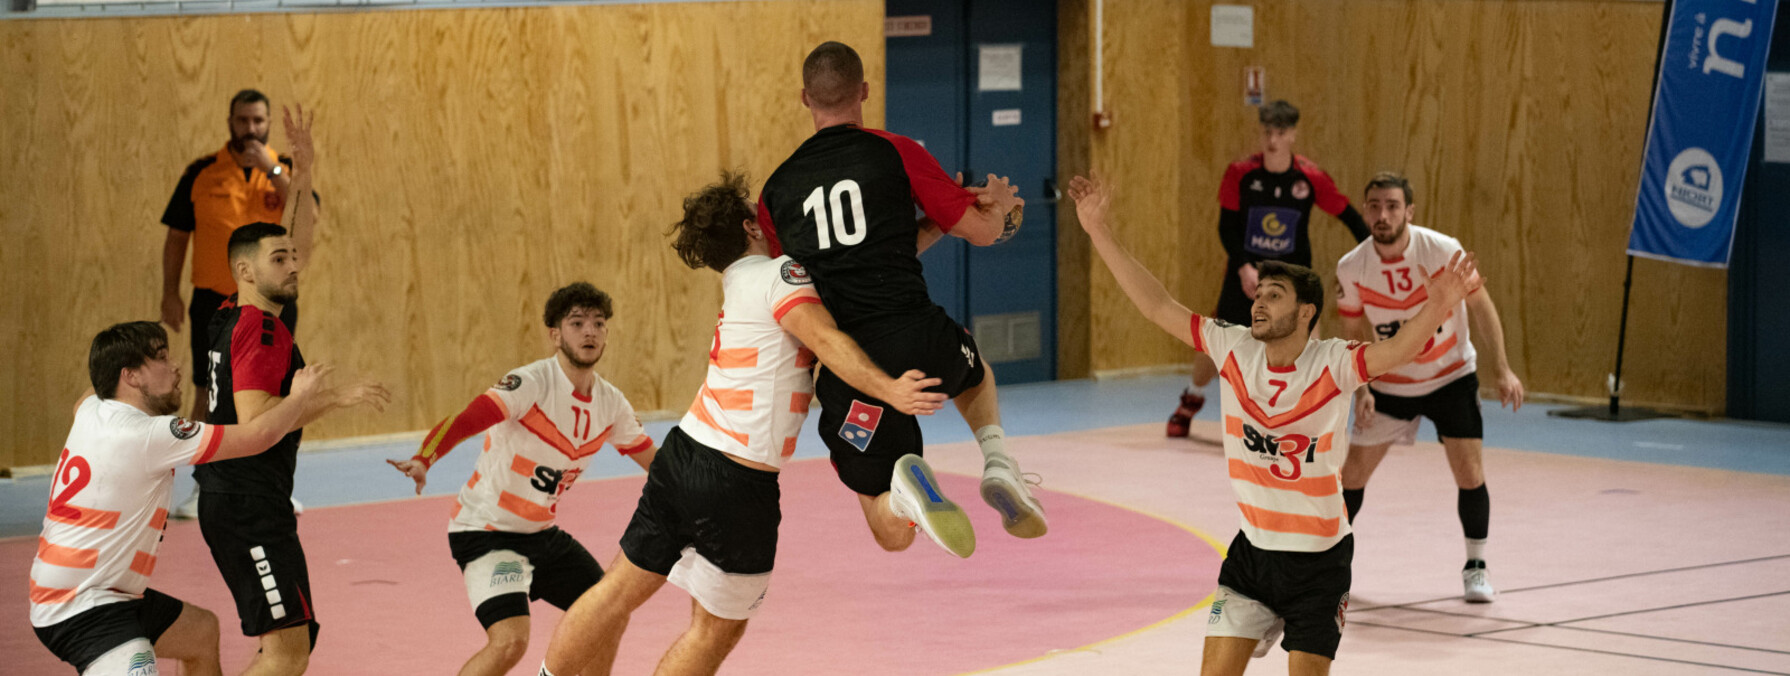 Match de handball Souche contre Biard